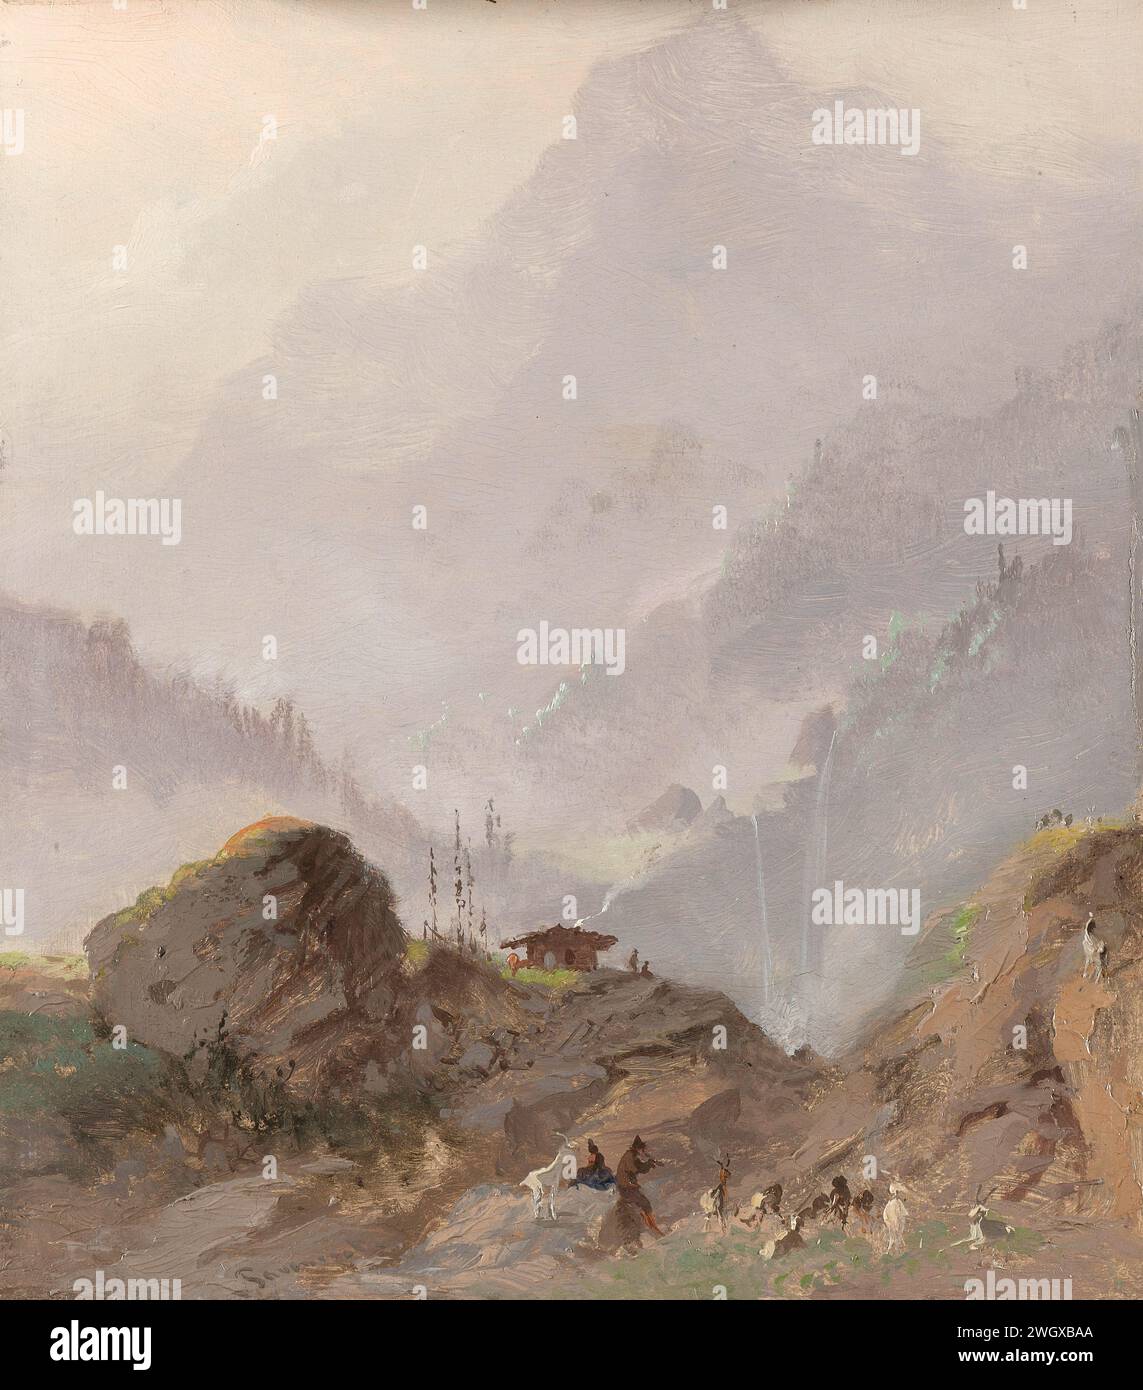 Paysage de montagne au Tyrol avec Chamois, Johannes Tavenraat, c. 1858 peinture paysage de montagne au Tyrol avec un berger avec des chèvres, une cascade au loin. panneau. Peinture à l'huile (peinture) montagnes Tyrol Banque D'Images